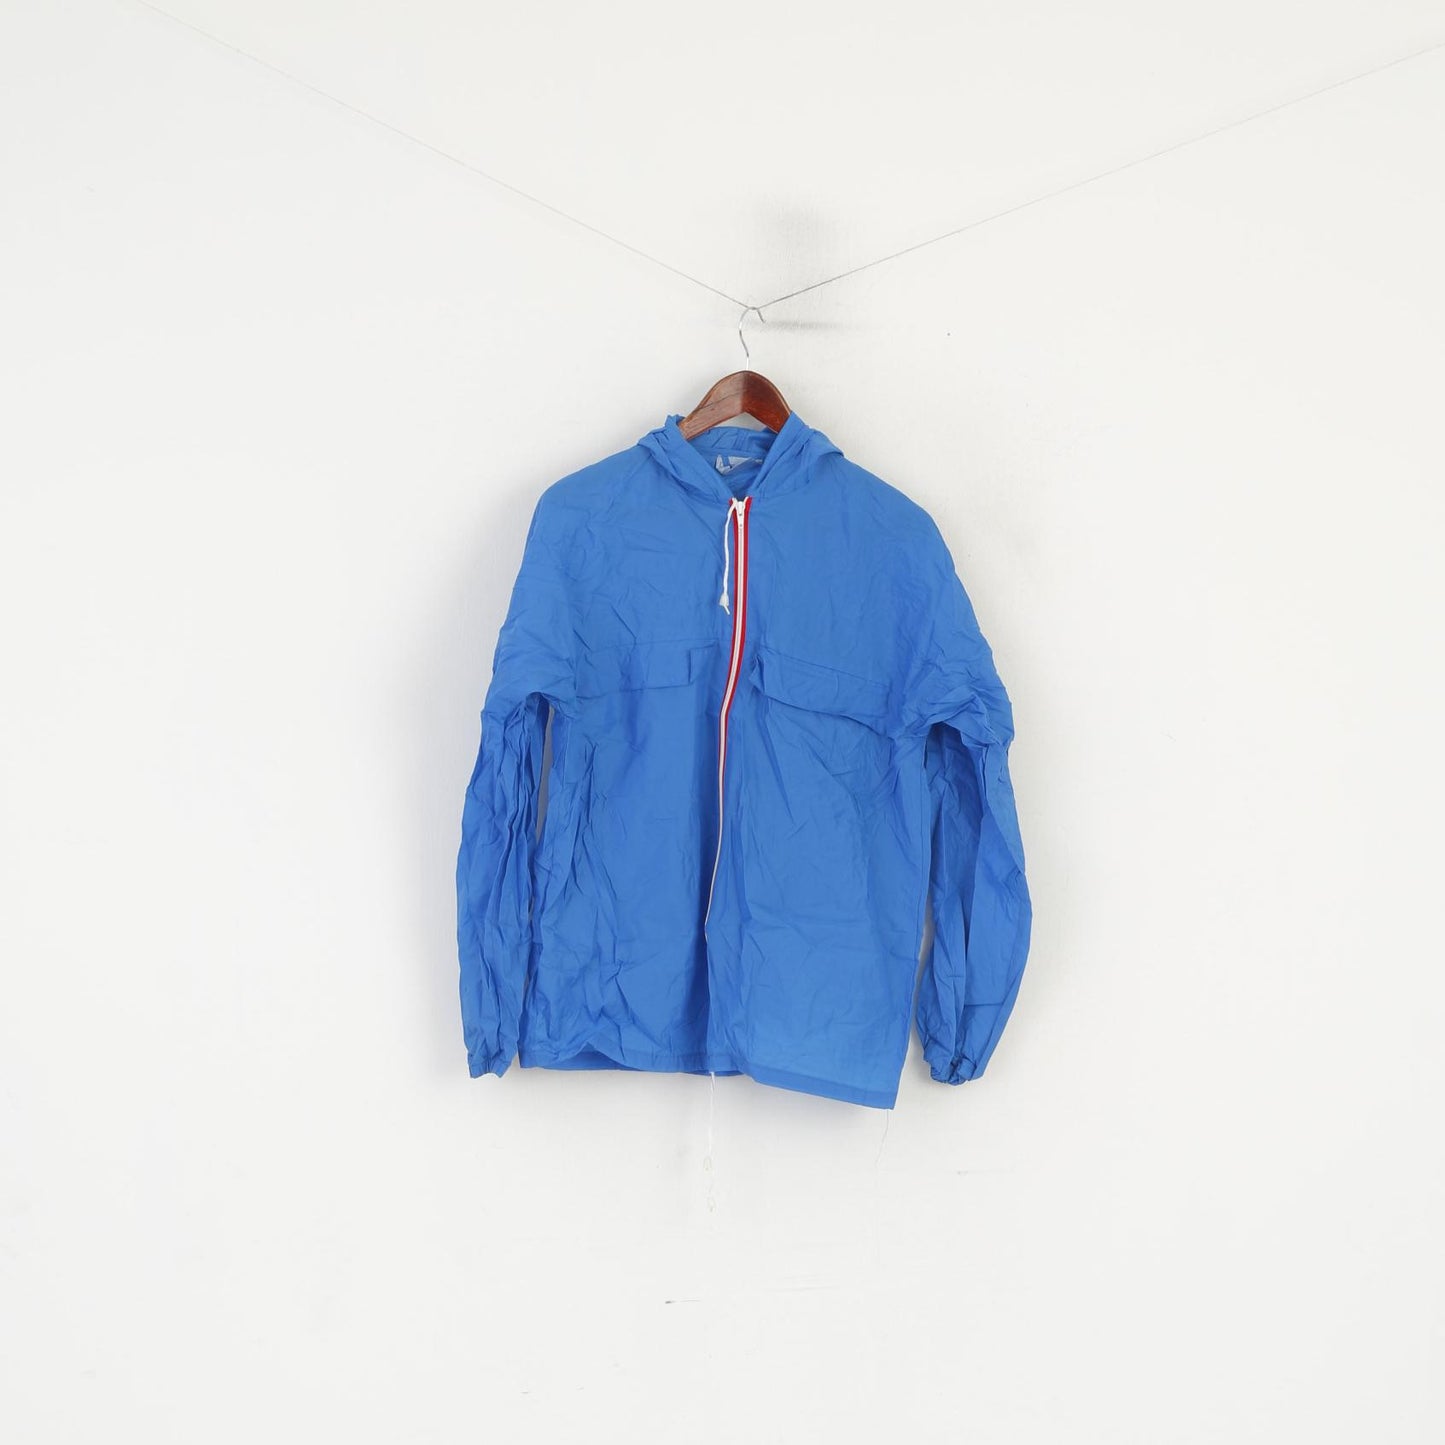 Vintage Men S Jacket Blue Nylon Waterproof Hooded Full Zip Rain Top